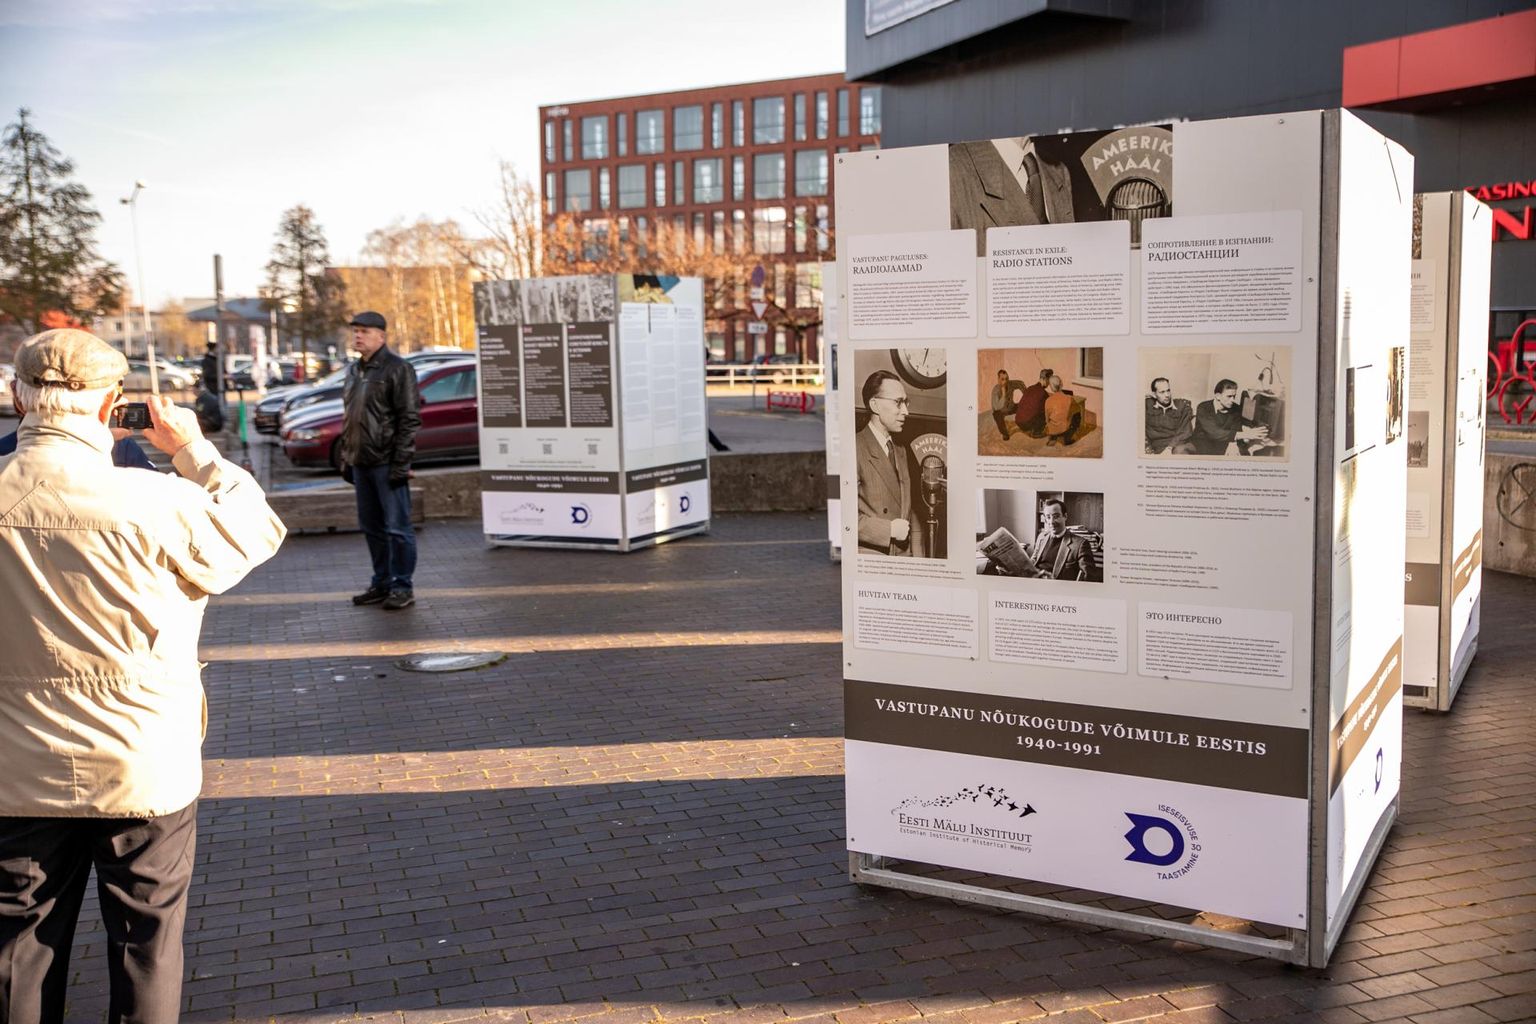 Näitus nõukogude võimule vastupanu kohta aastatel 1940–1991. Martensi väljak, Pärnu